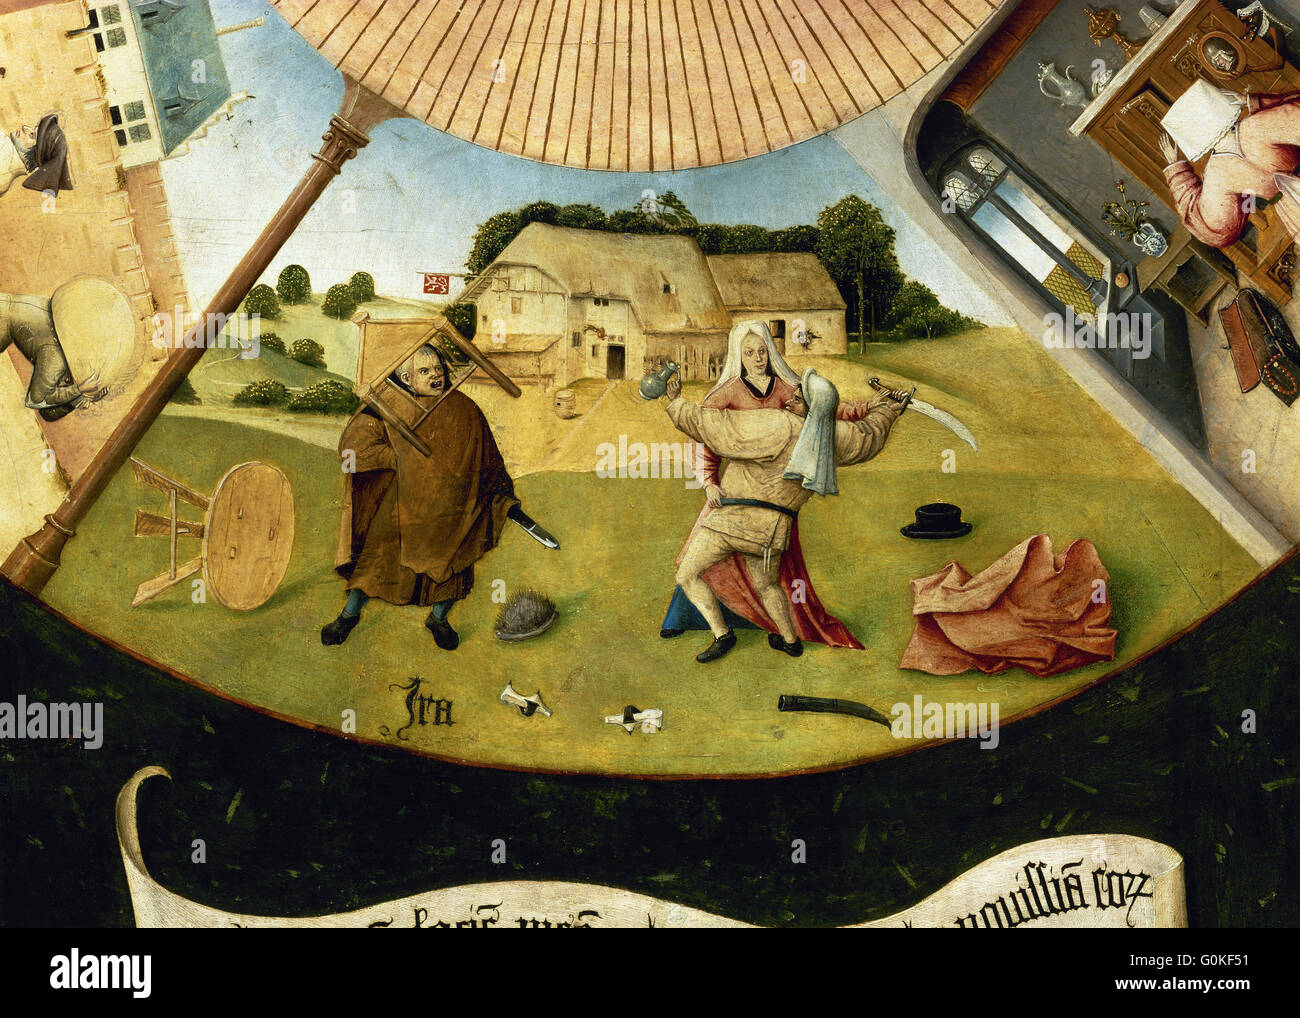 Jérôme Bosch (c.1450-1516). Peintre hollandais. Le tableau des sept péchés capitaux. Détail de la colère. Musée du Prado. Madrid. L'Espagne. Banque D'Images